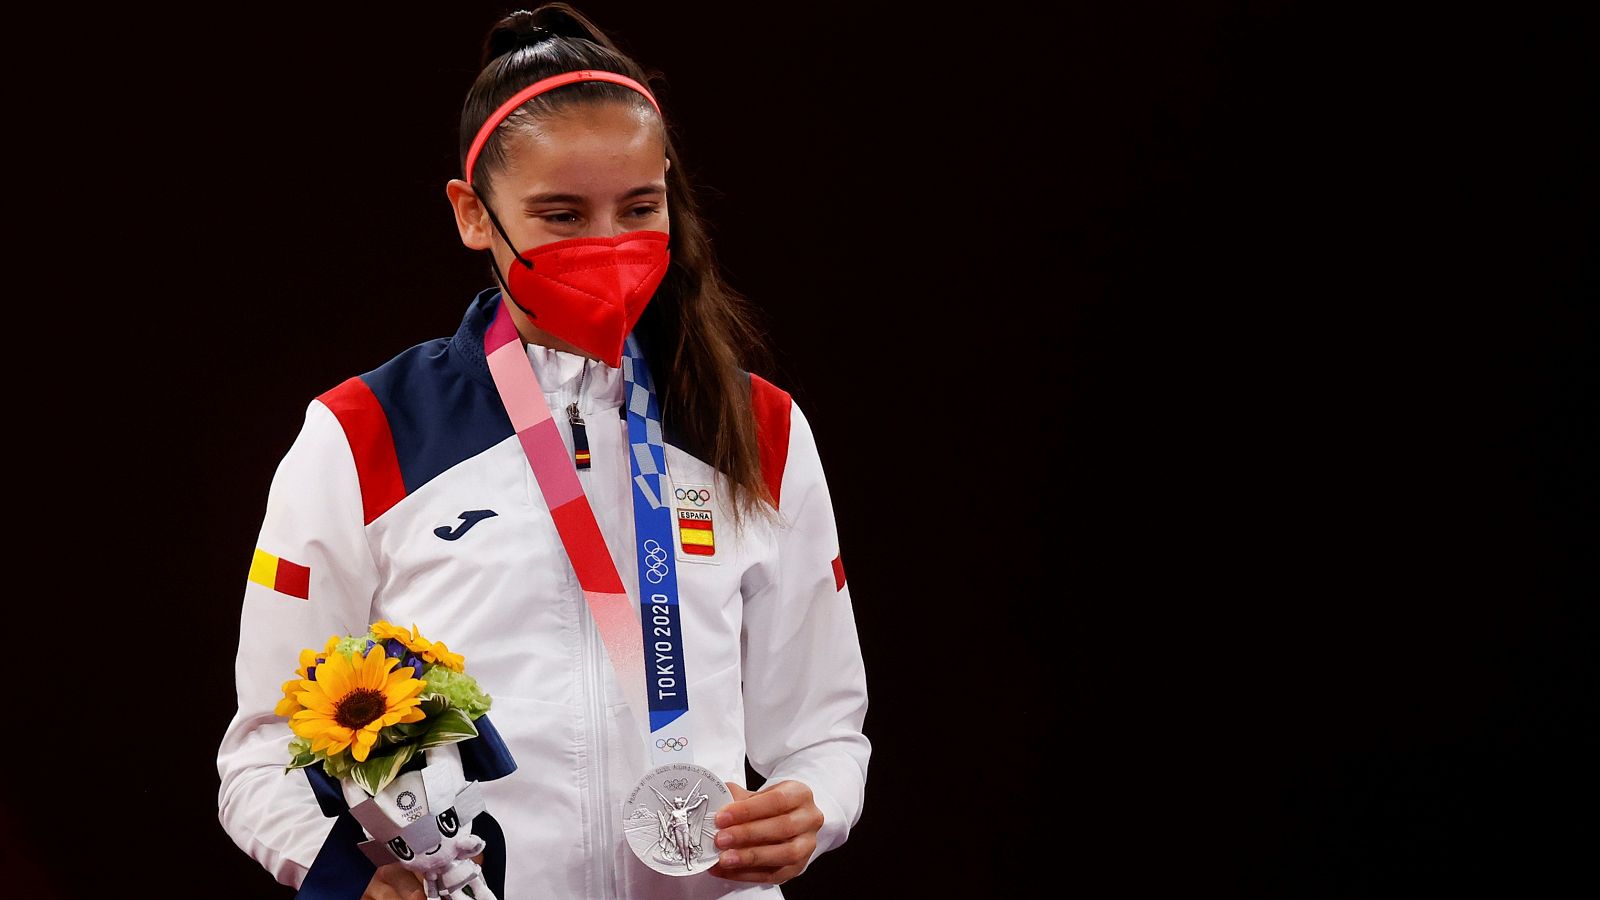 Adriana Cerezo, plata olímpica: "Me llevo la ilusión de la gente que hay detrás" - ver ahora